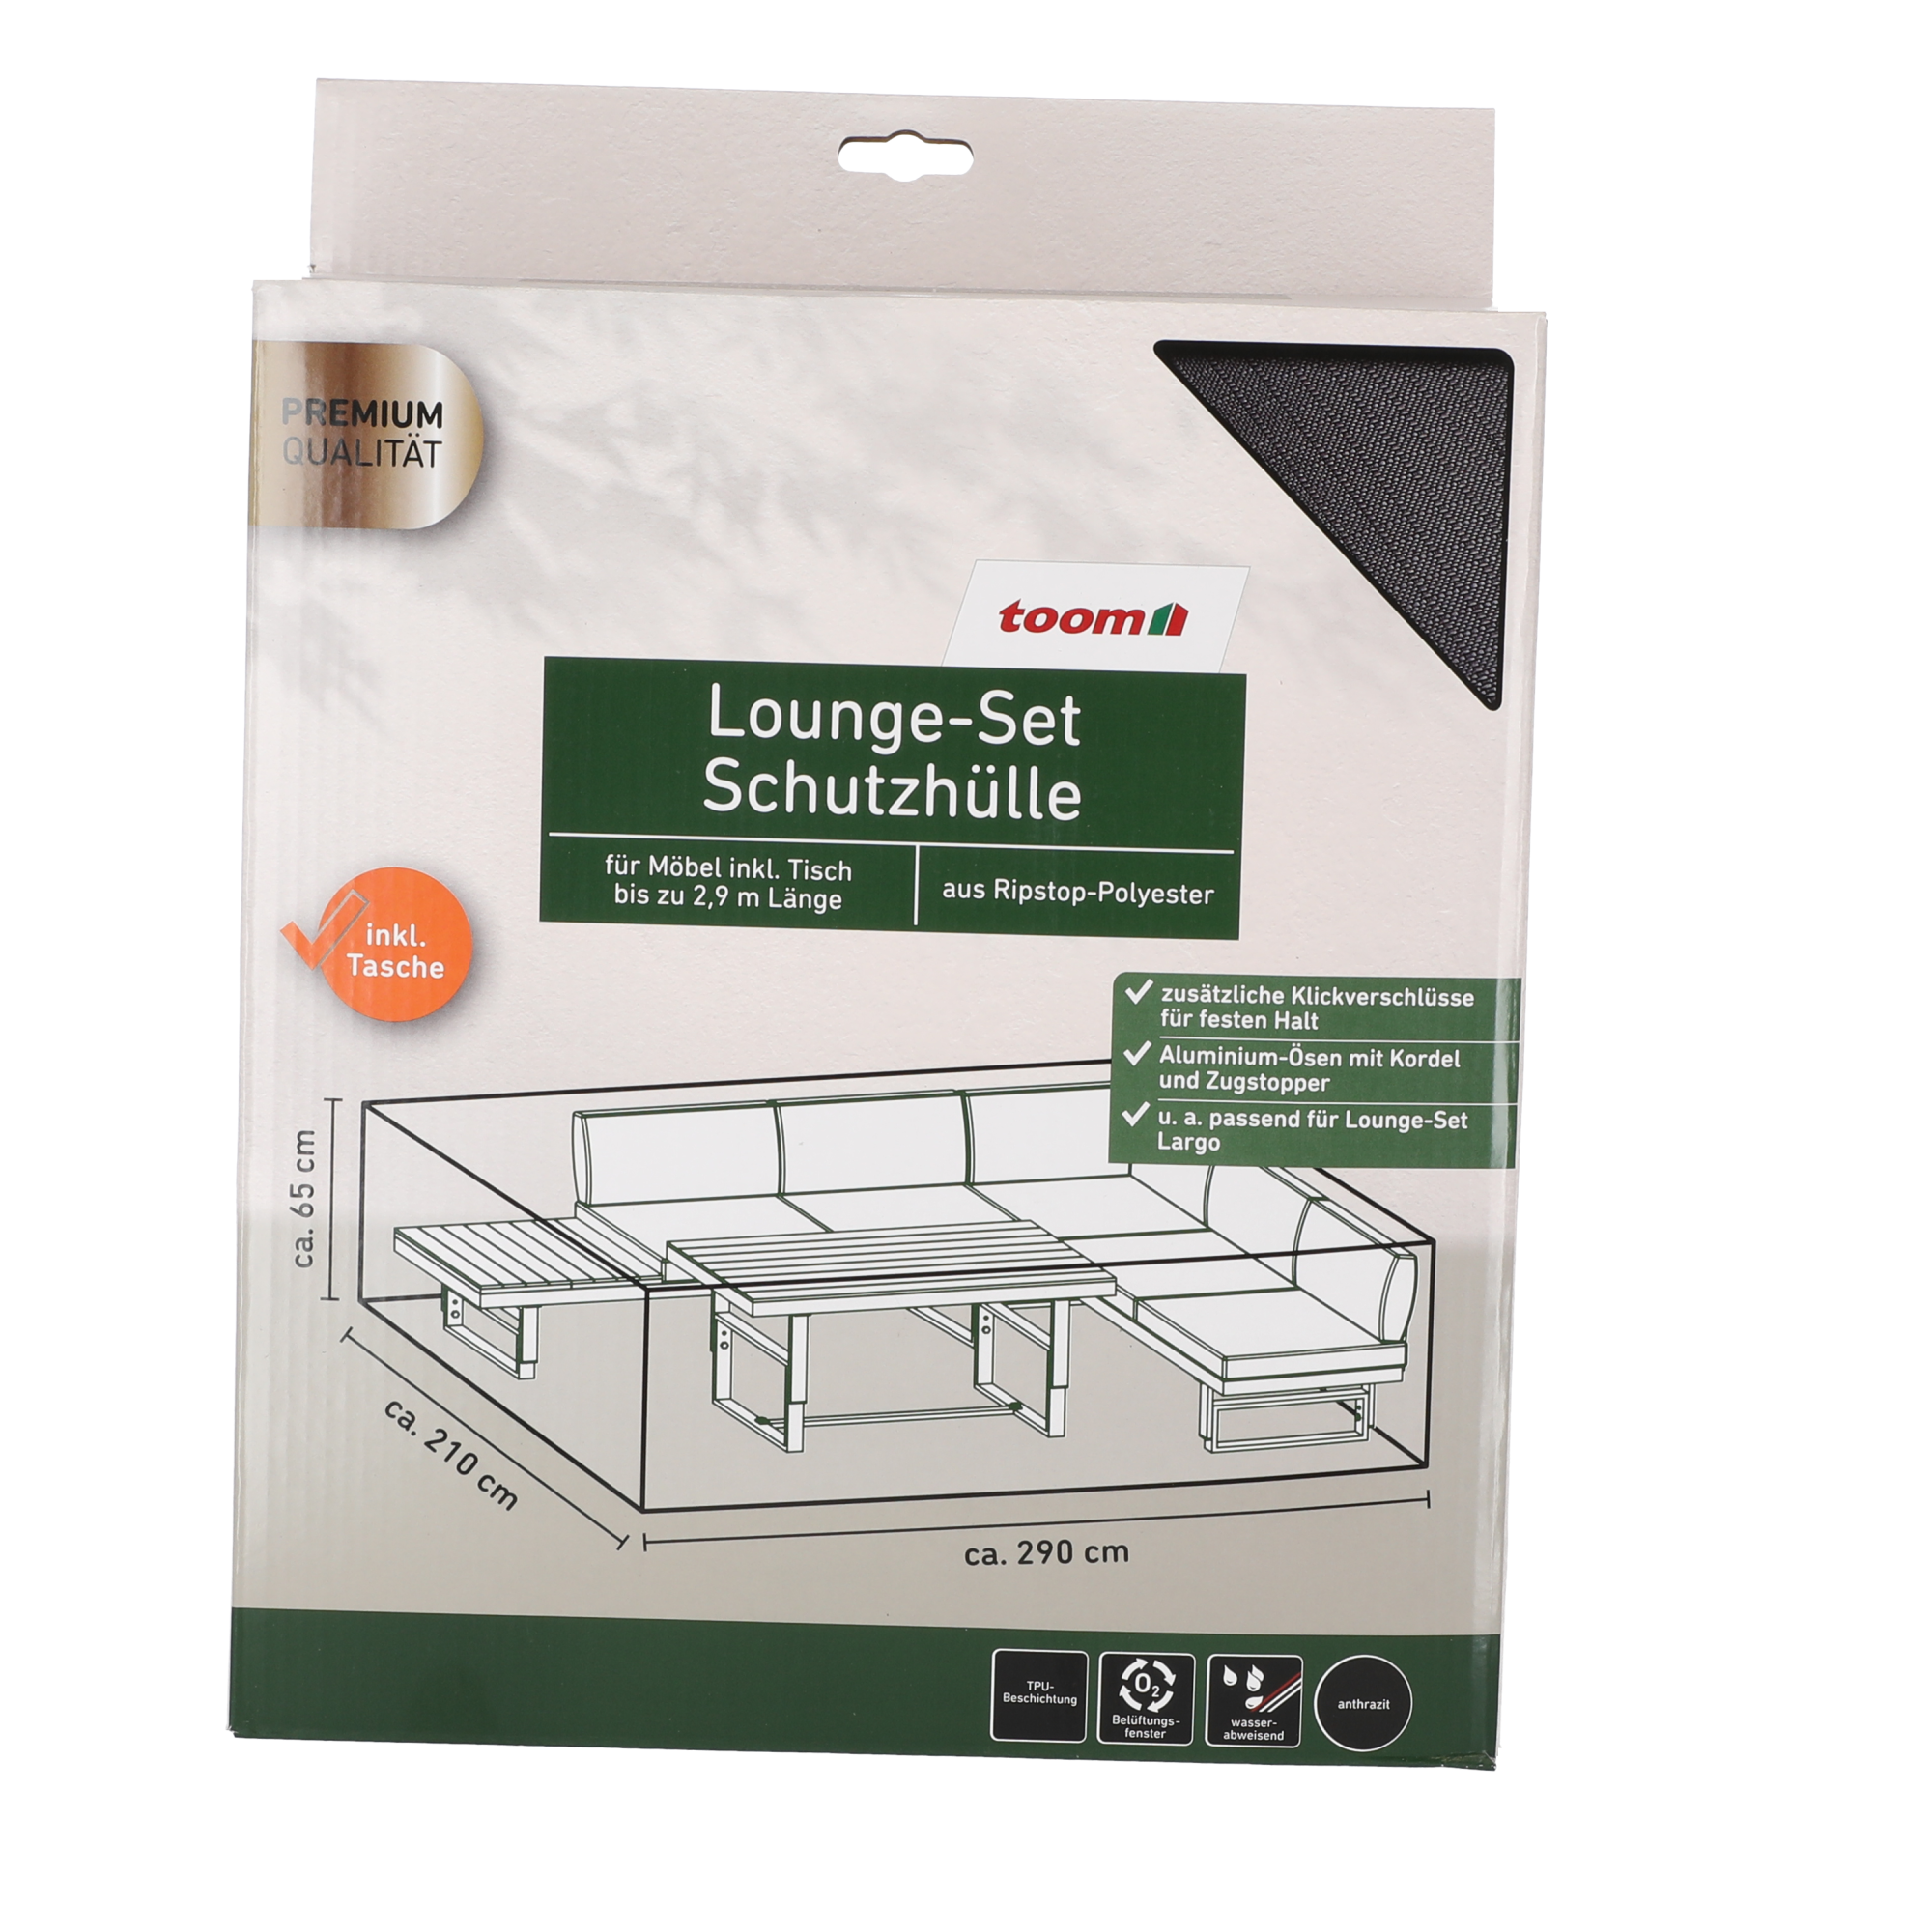 Lounge-Set-Schutzhülle für Möbel inkl. Tisch bis zu 2,9 m Länge + product picture